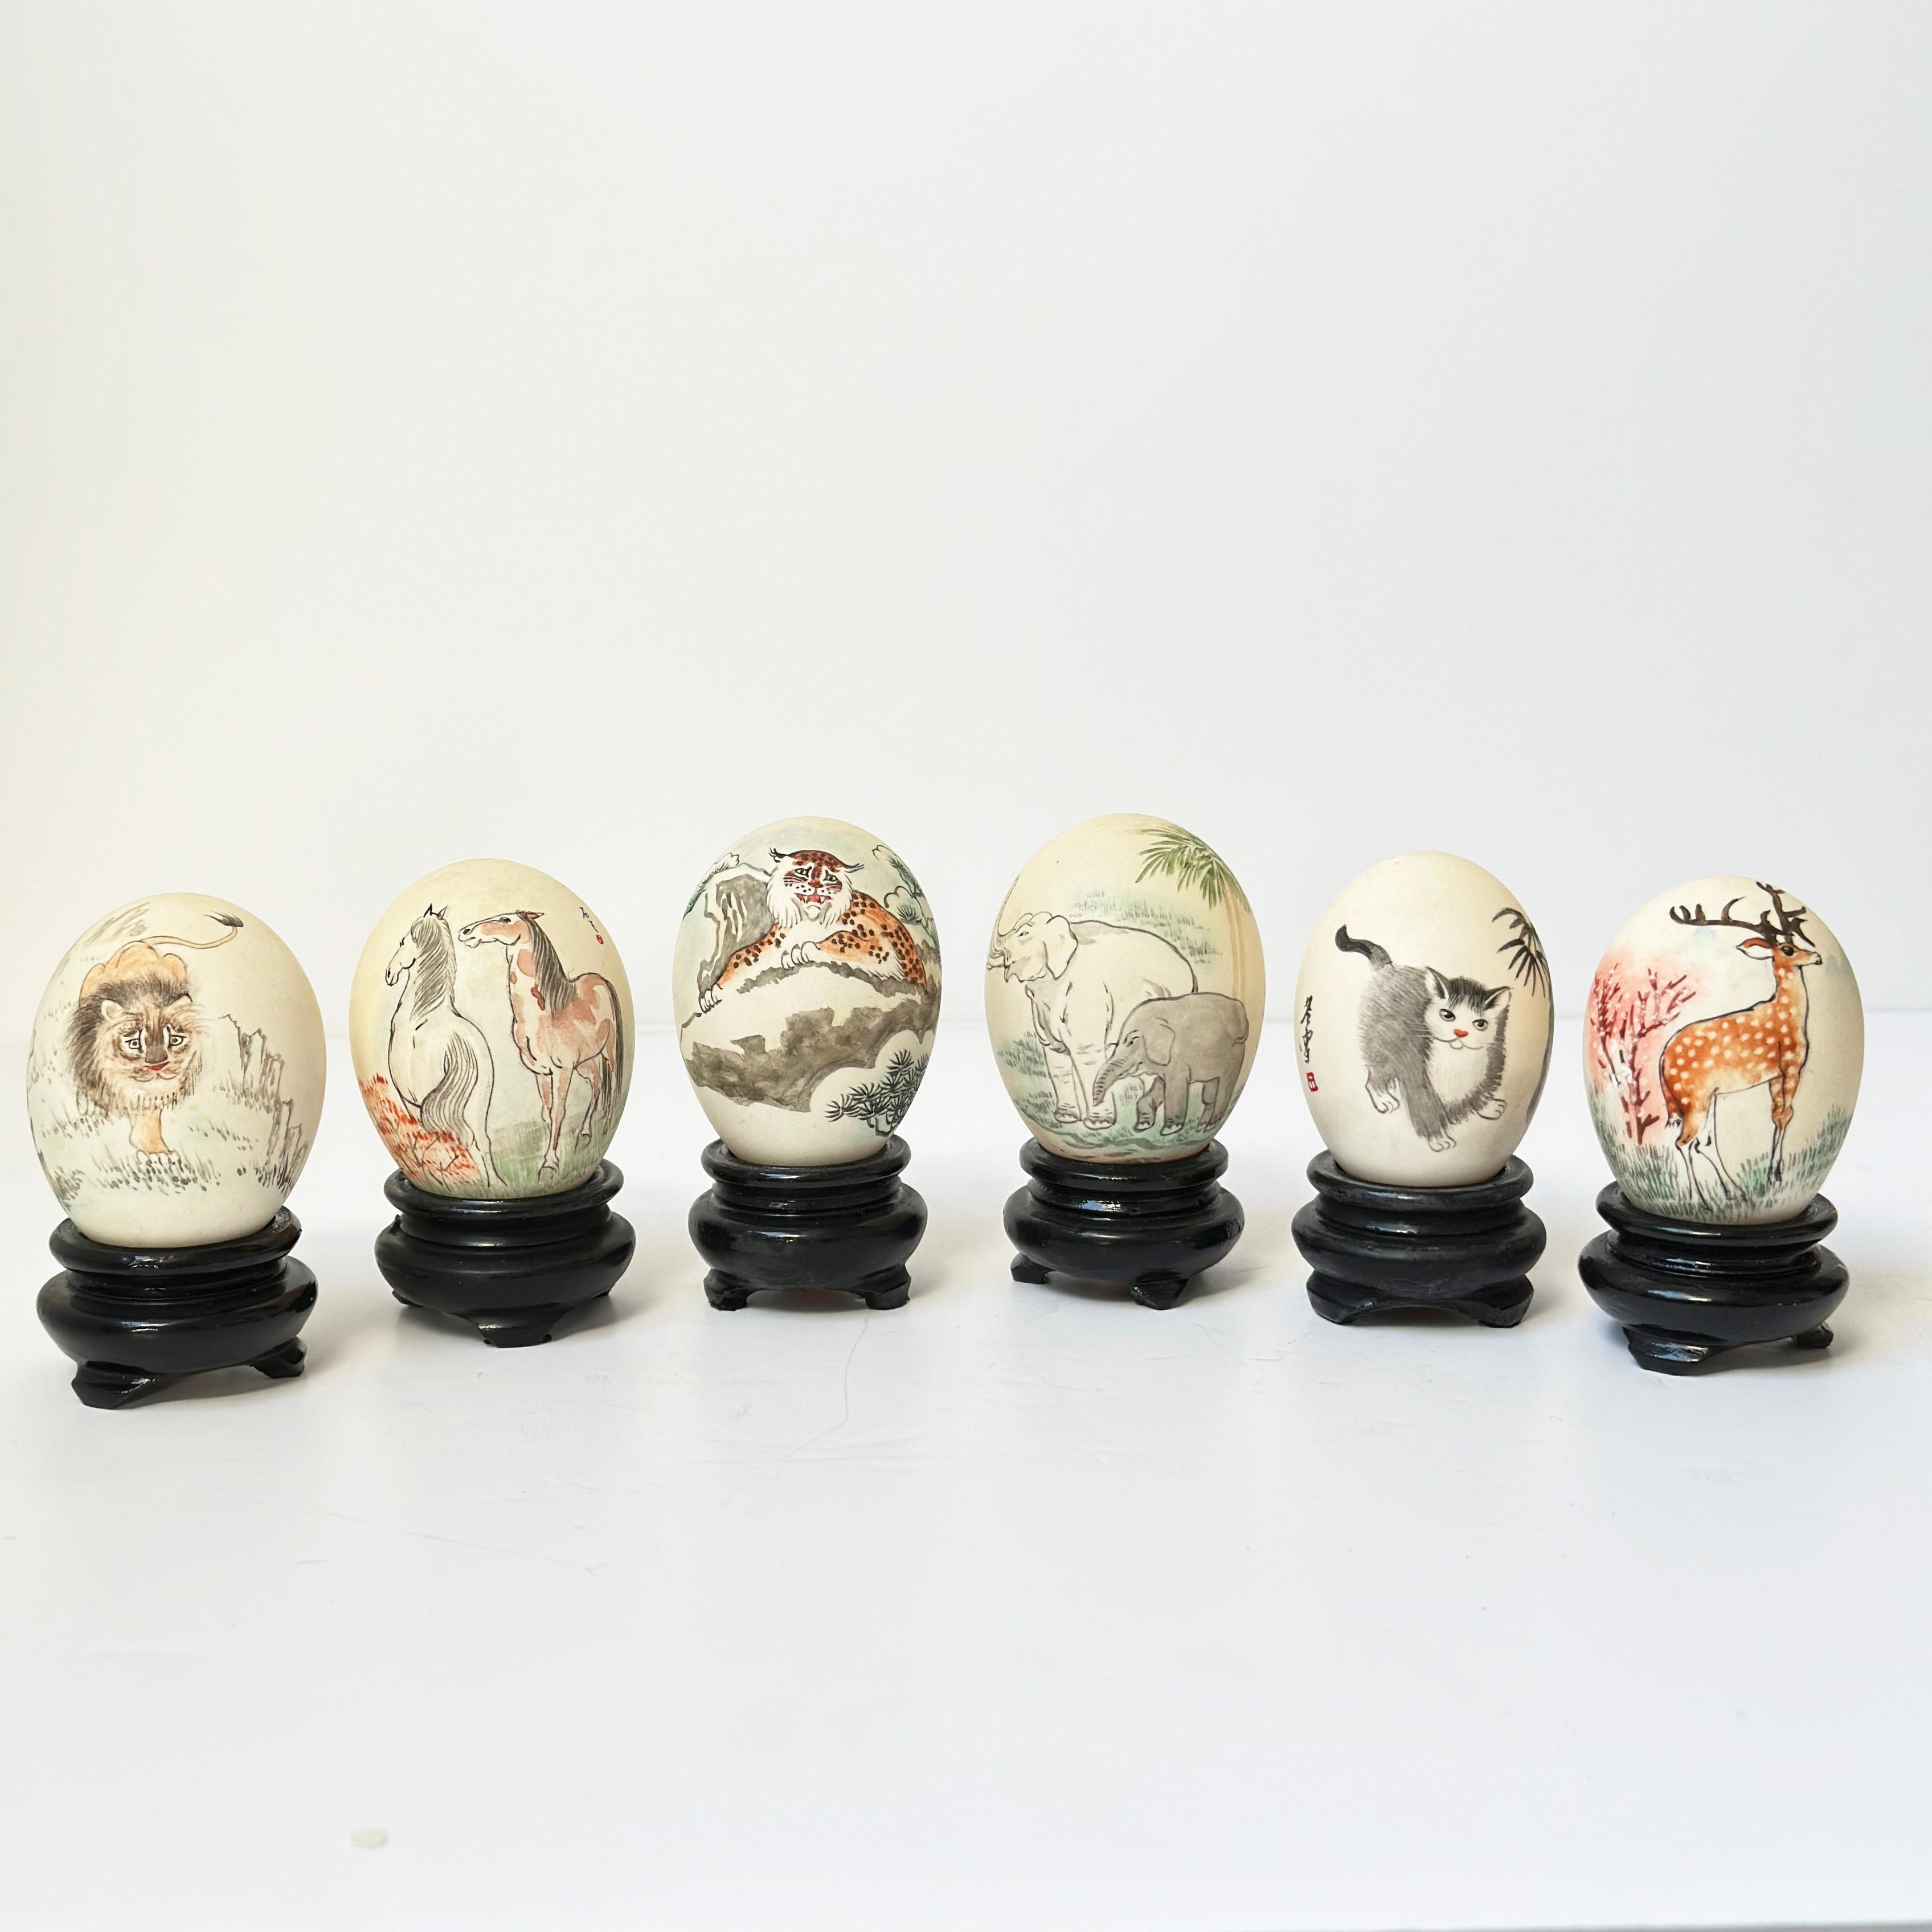 Vintage Chinese Painted Eggs: Diese Kollektion besteht aus einer Auswahl handbemalter Eierschalen, die jeweils auf einem geschnitzten Holzsockel präsentiert werden. Diese Stücke wurden in den 1970er Jahren von geschickten Eierschalenkünstlern in